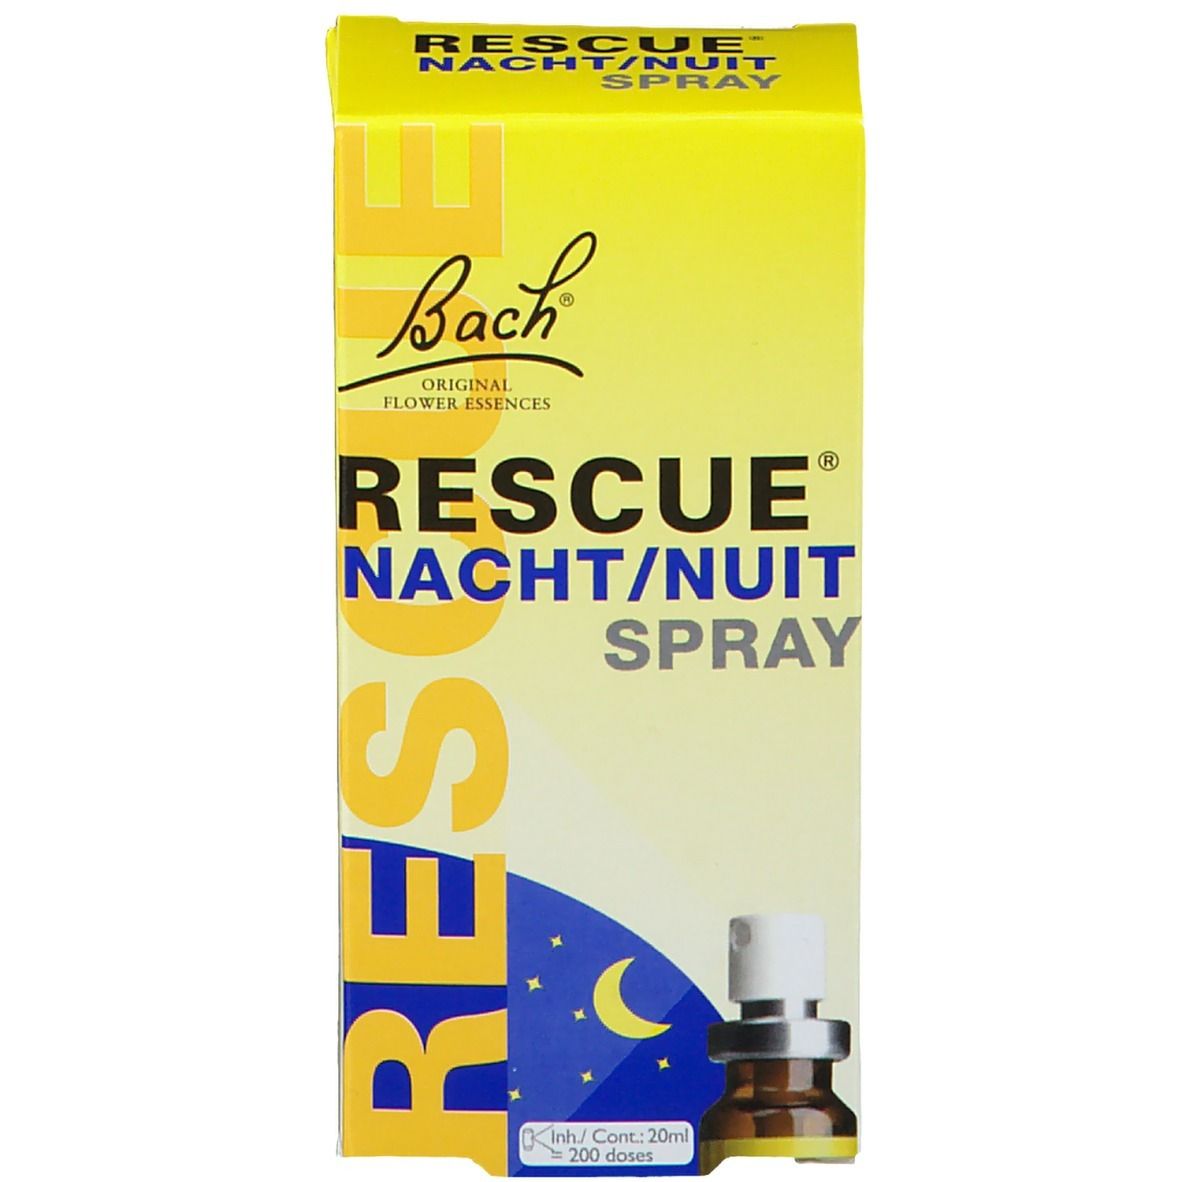 Bach® Rescue Notte Spray